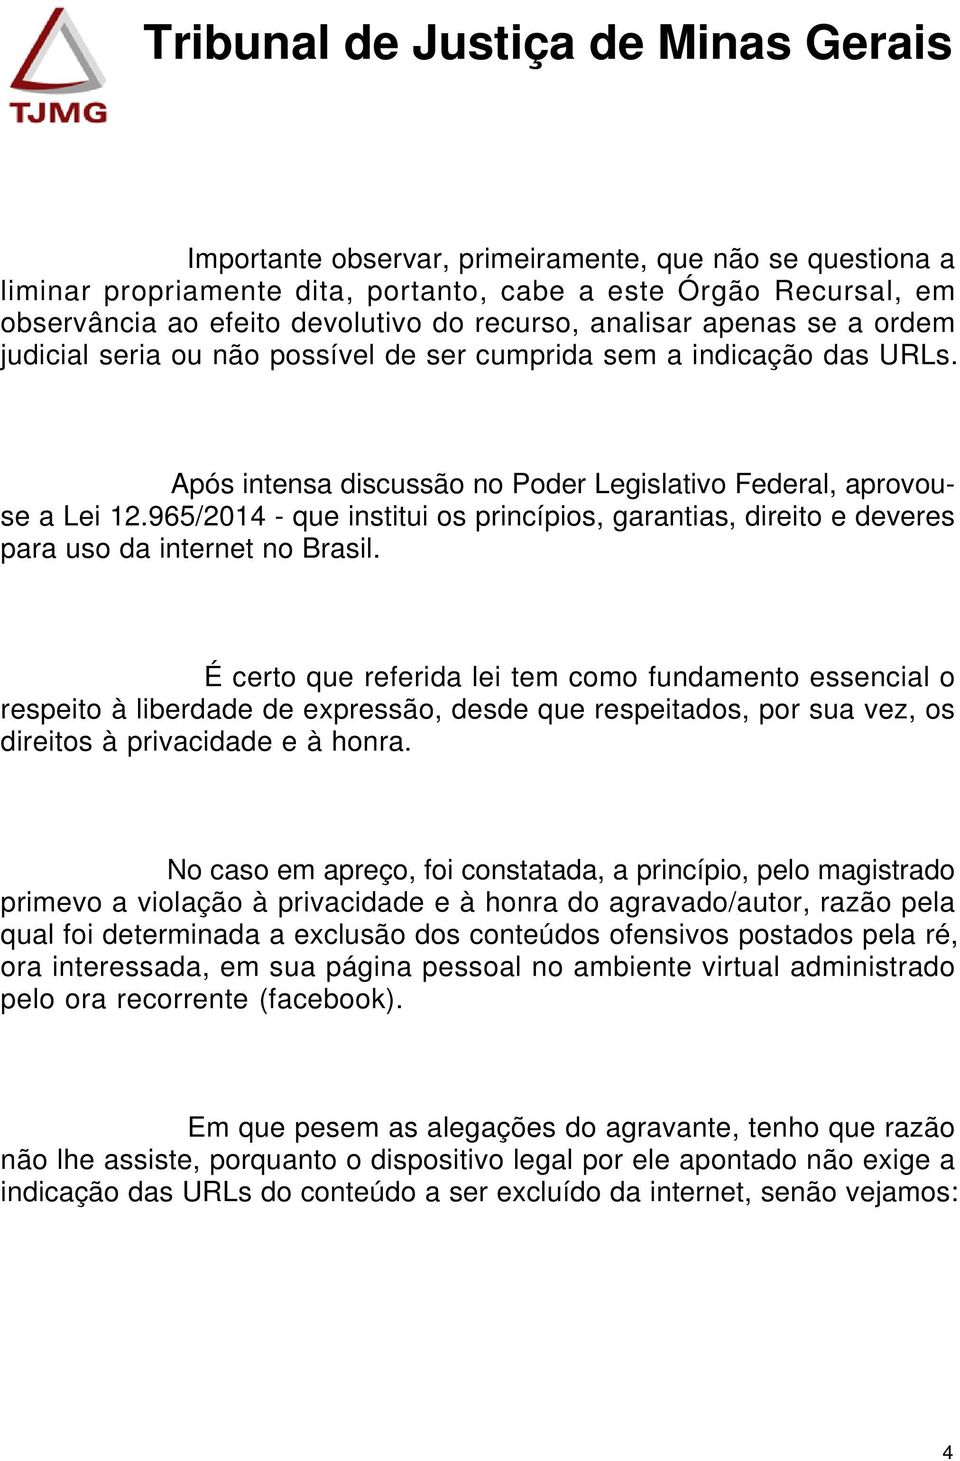 965/2014 - que institui os princípios, garantias, direito e deveres para uso da internet no Brasil.